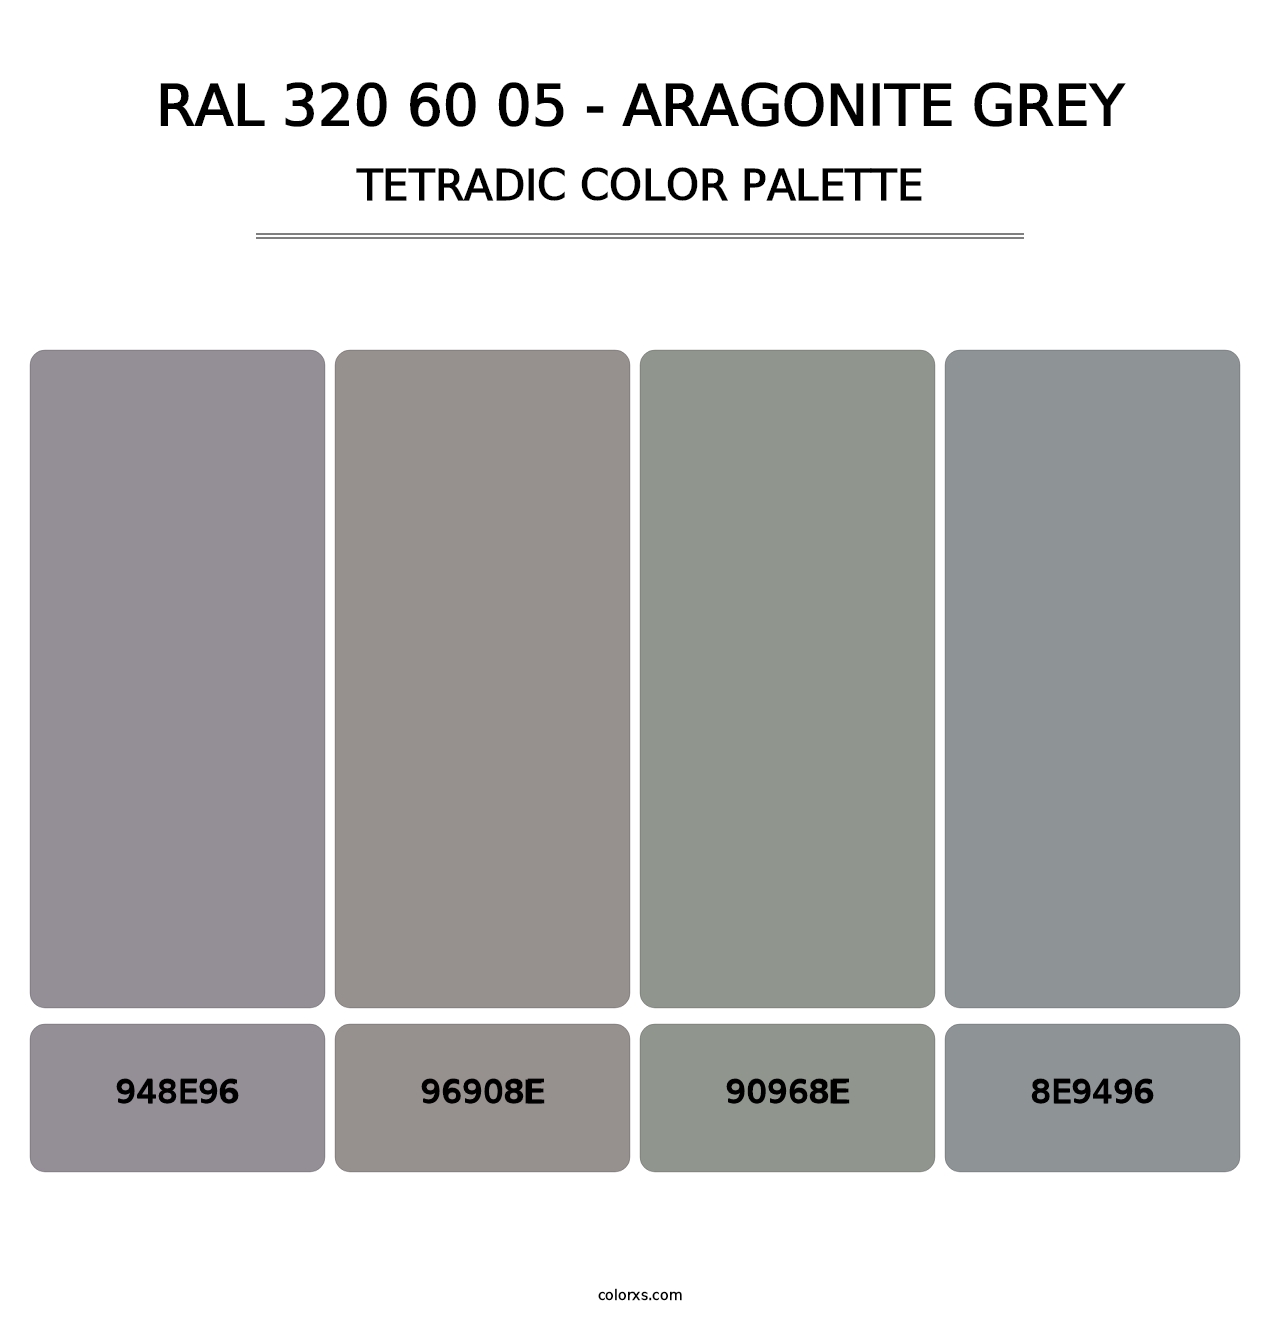 RAL 320 60 05 - Aragonite Grey - Tetradic Color Palette